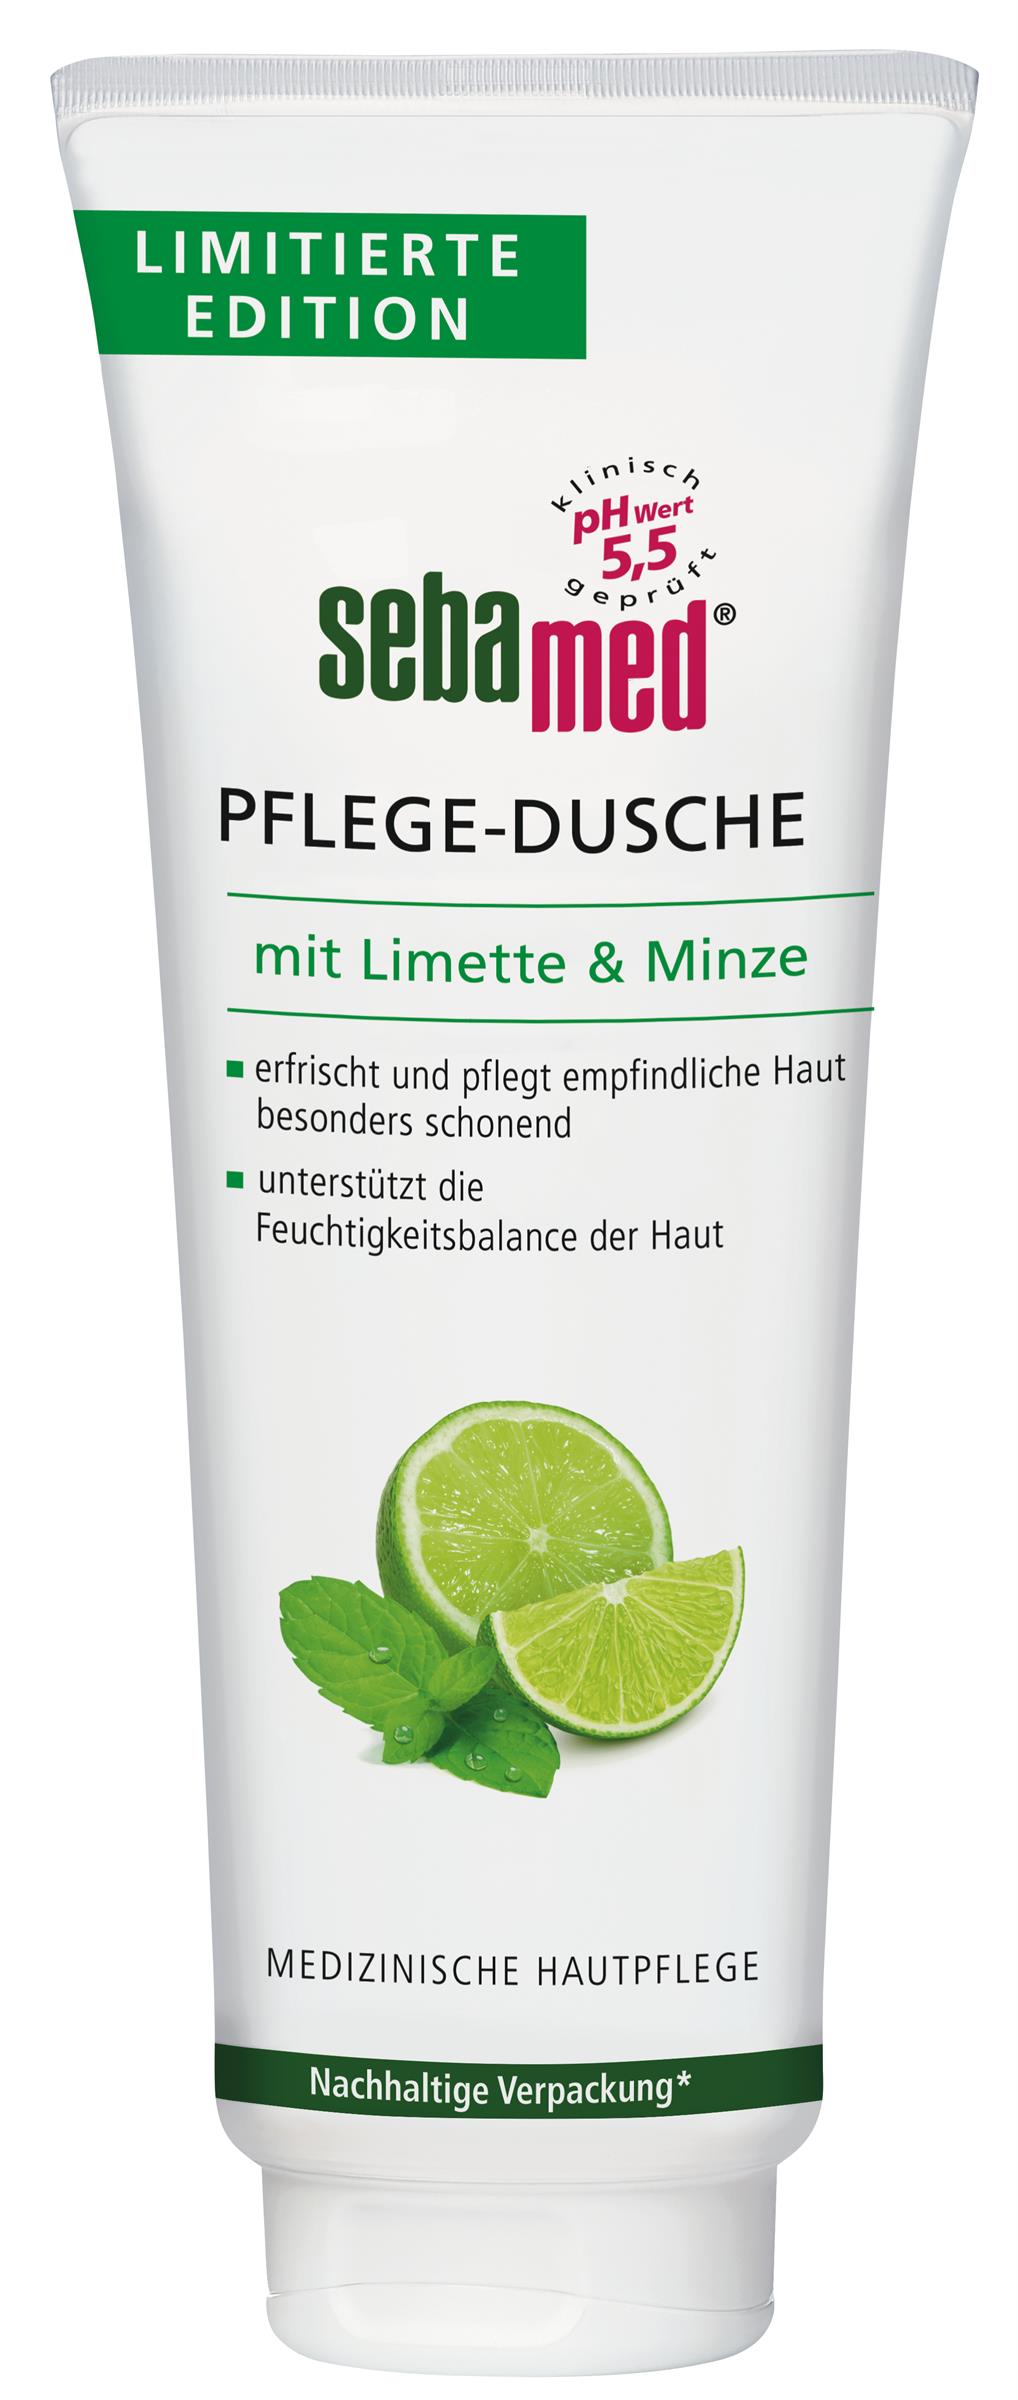 Neu: sebamed Pflege-Dusche mit Limette & Minze (250 ml): UVP 3,95 Euro